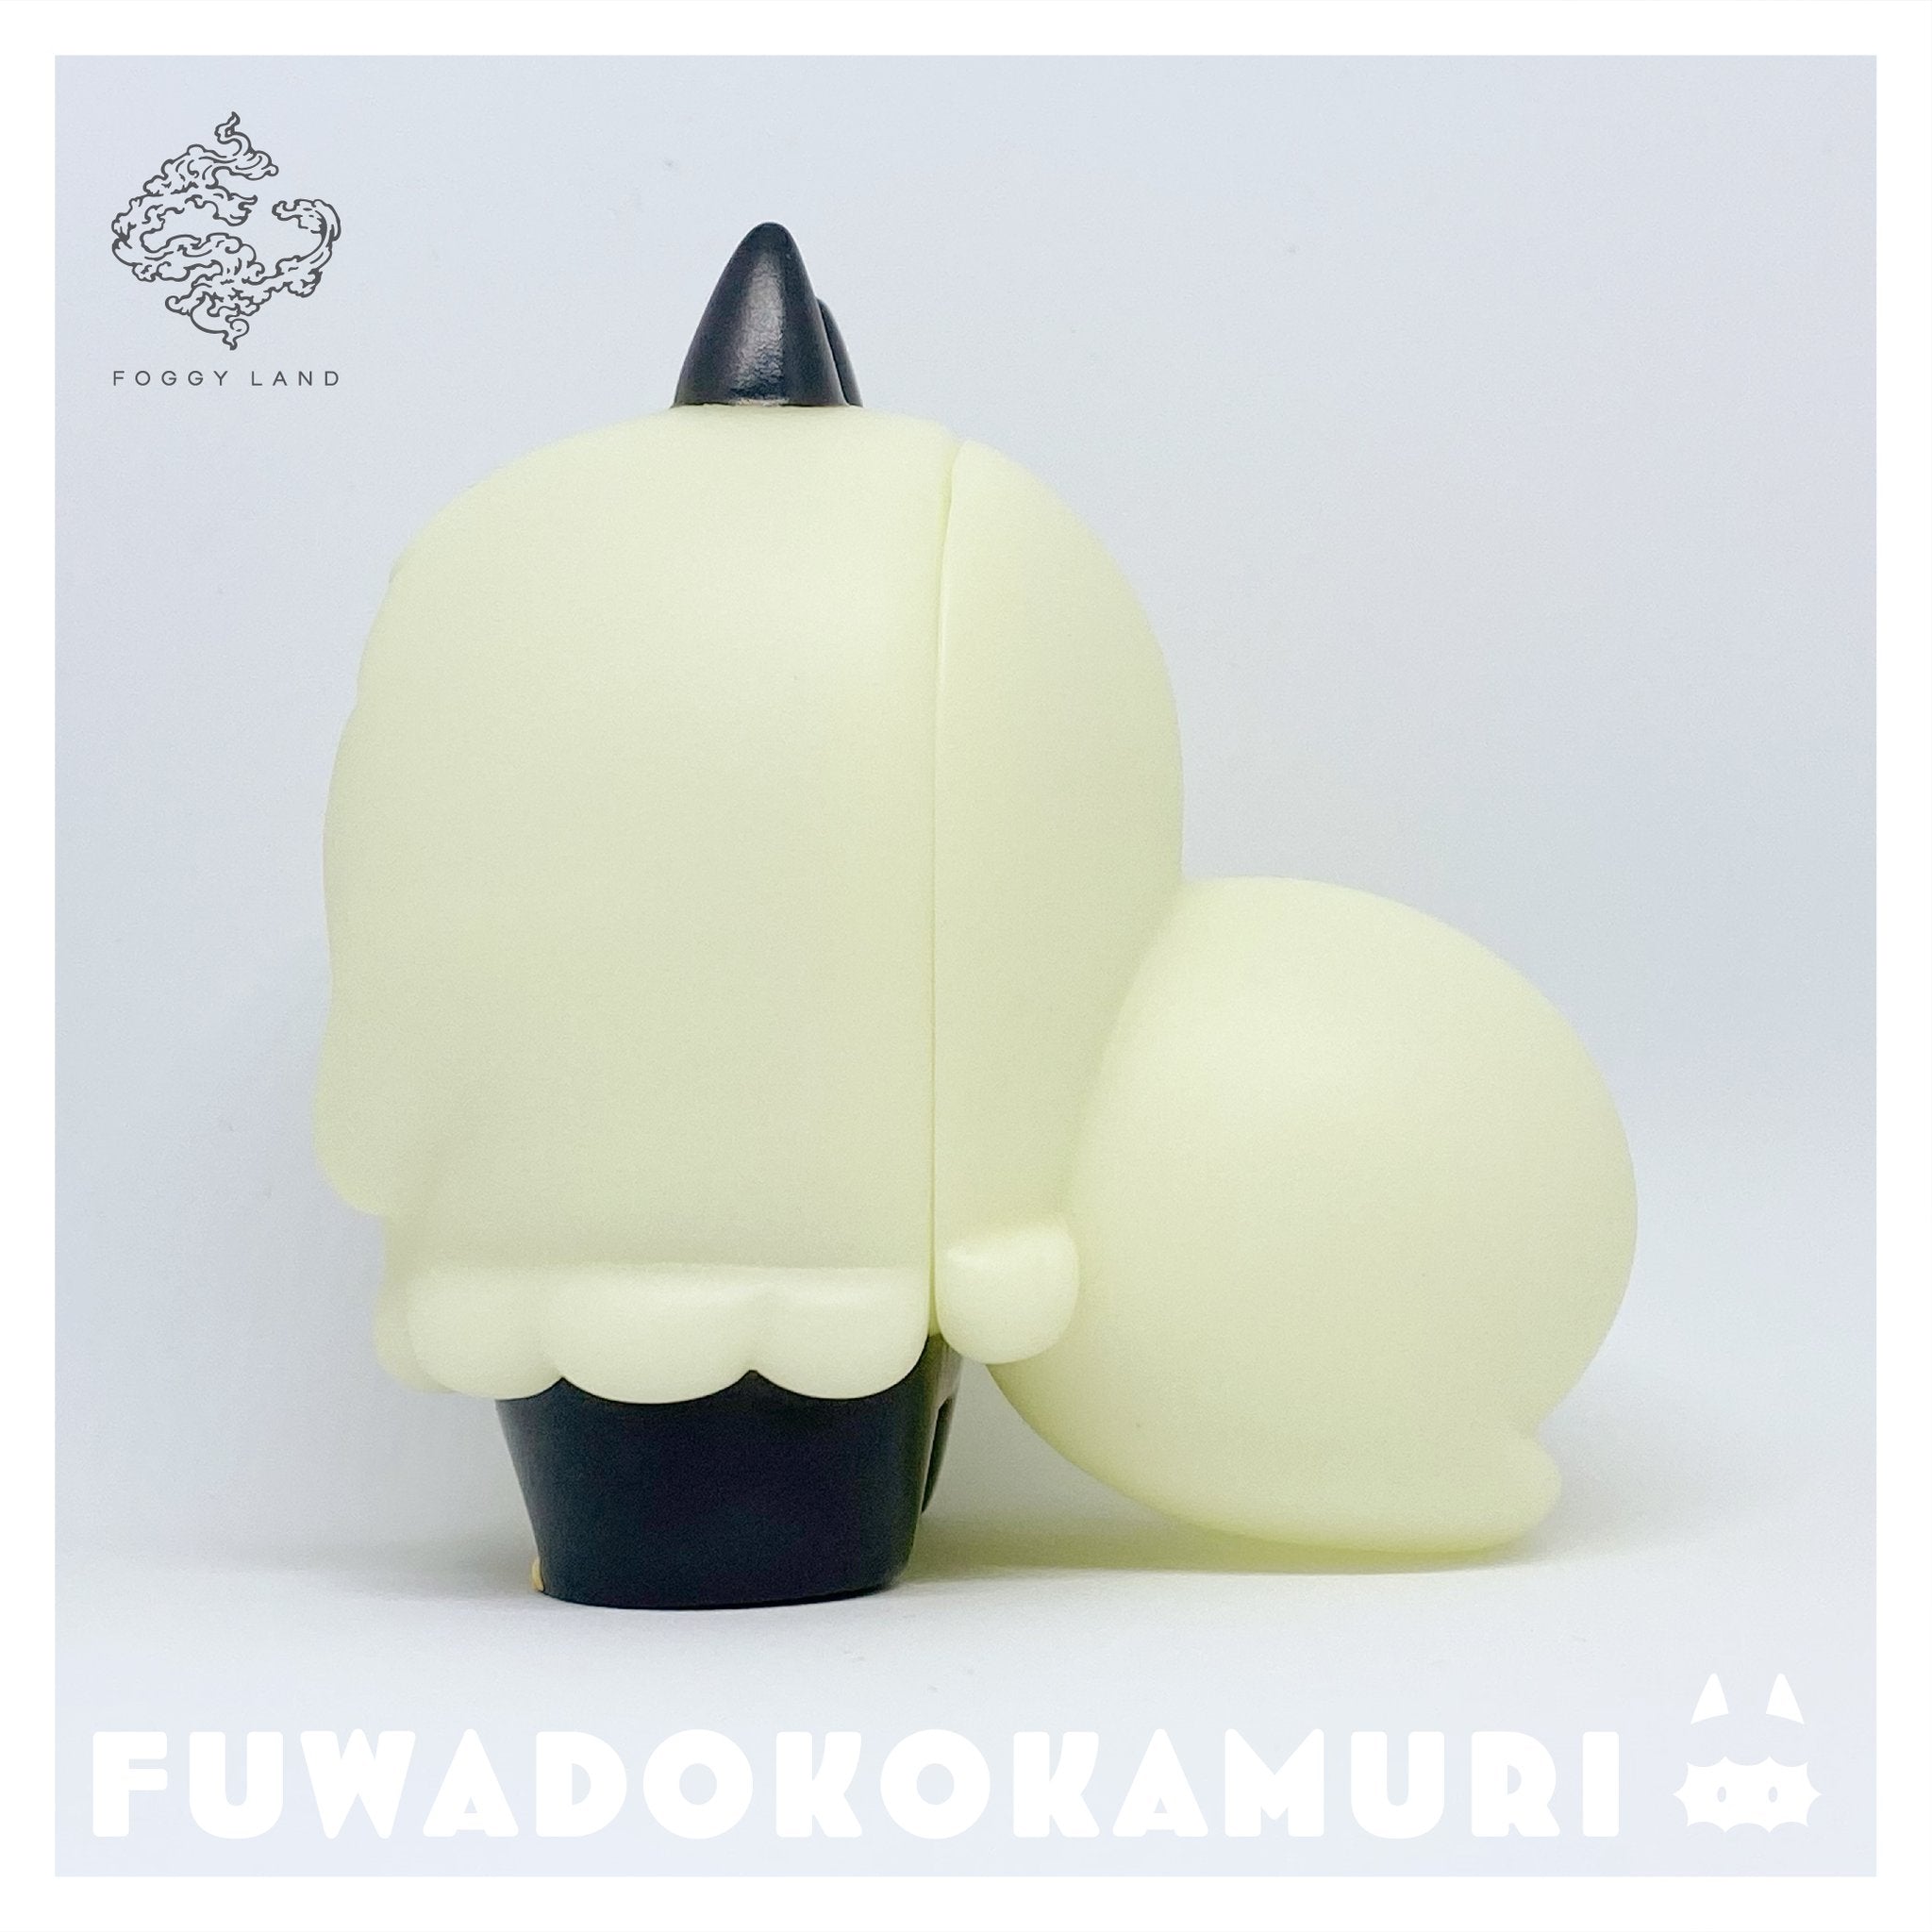 Fuwadokokamuri - Luminous by Moya